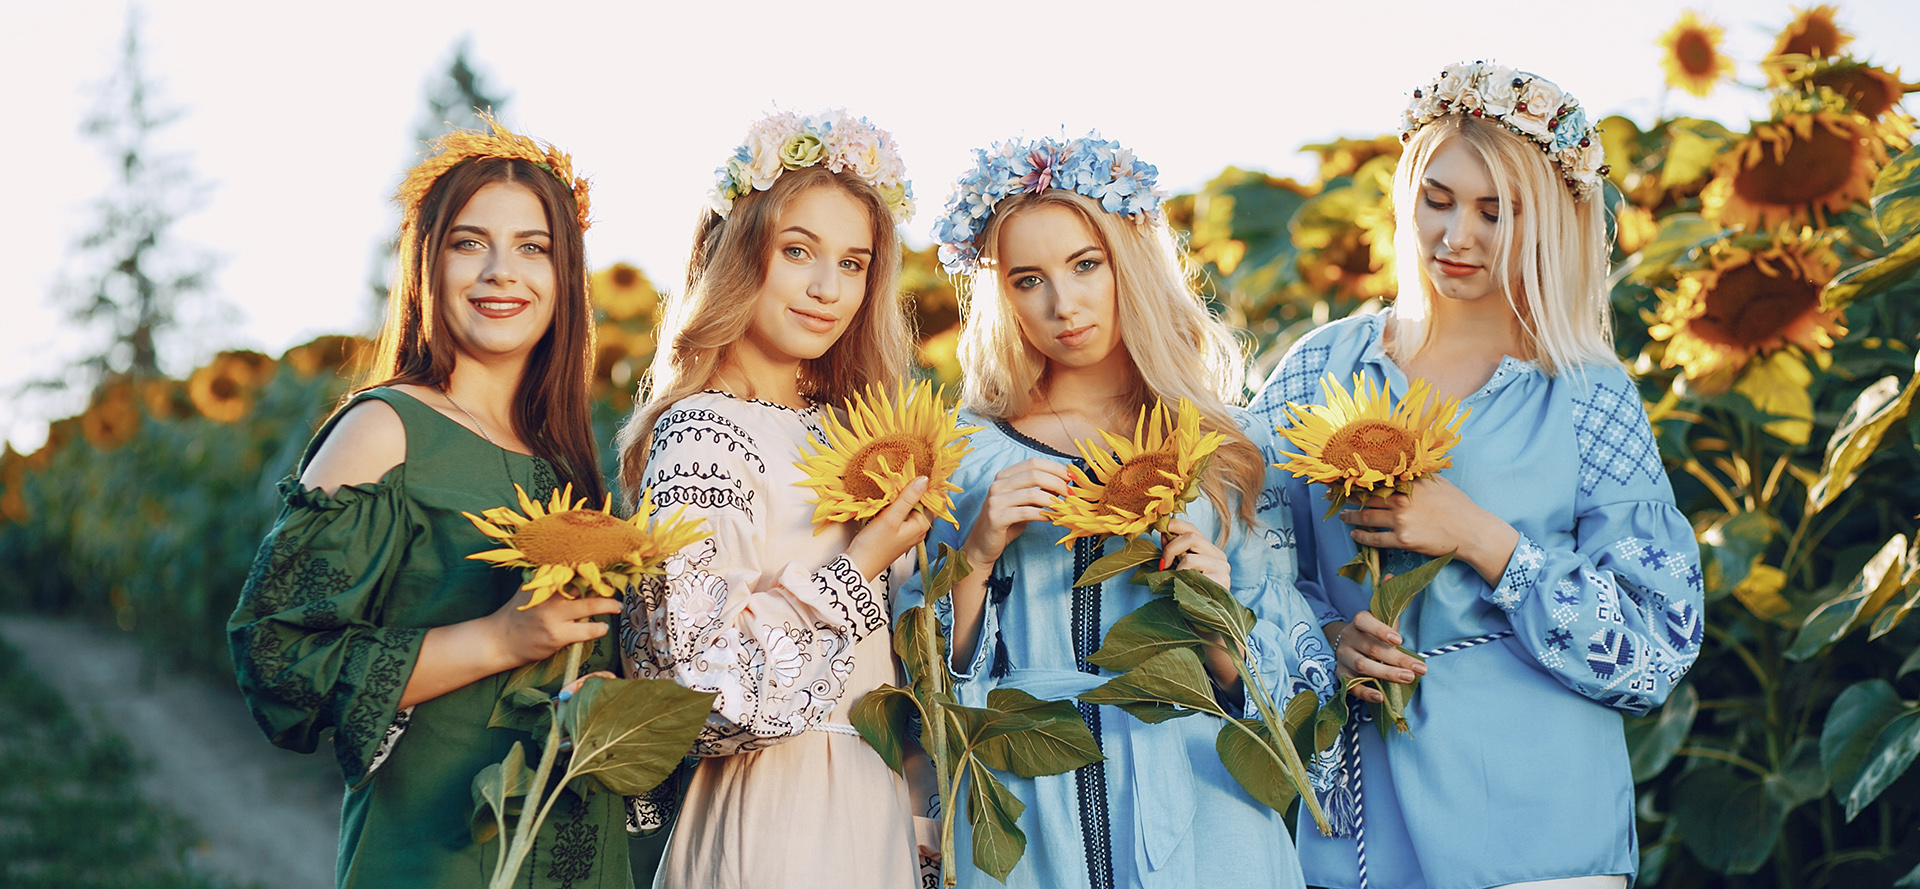 Vakre single ukrainske kvinner med solsikker i hendene.